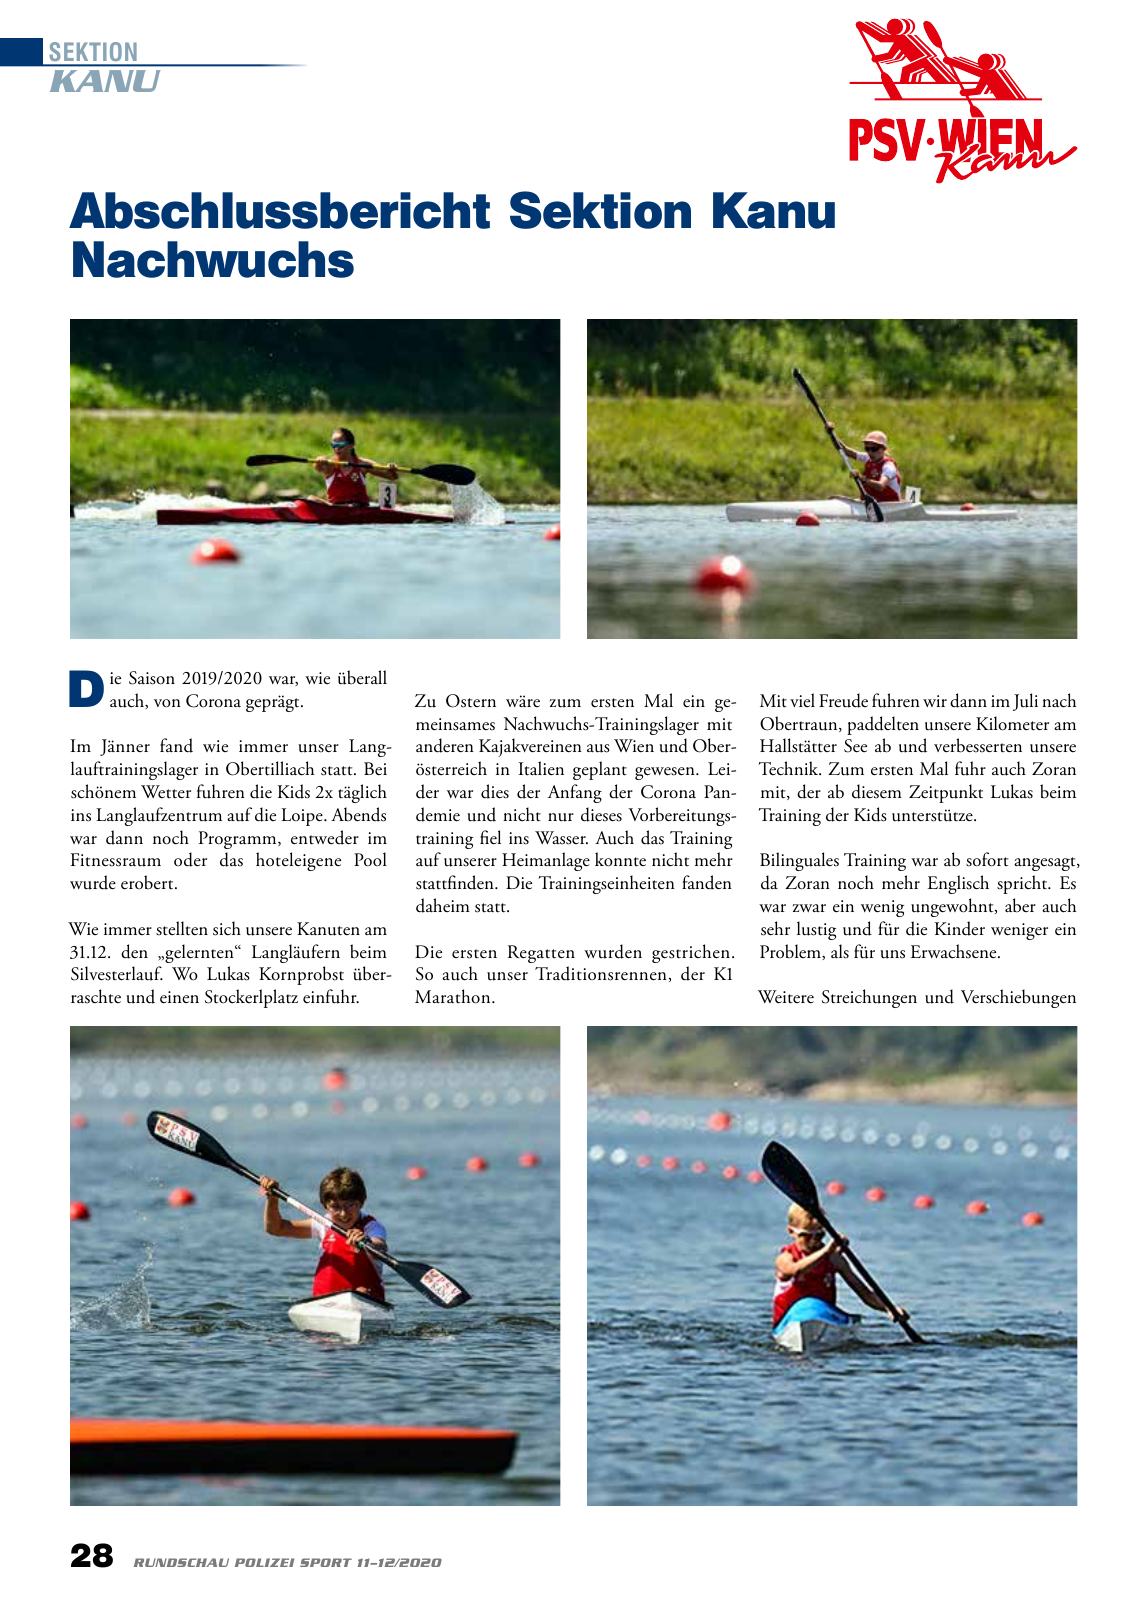 Vorschau Rundschau Polizei Sport 11-12/2020 Seite 28